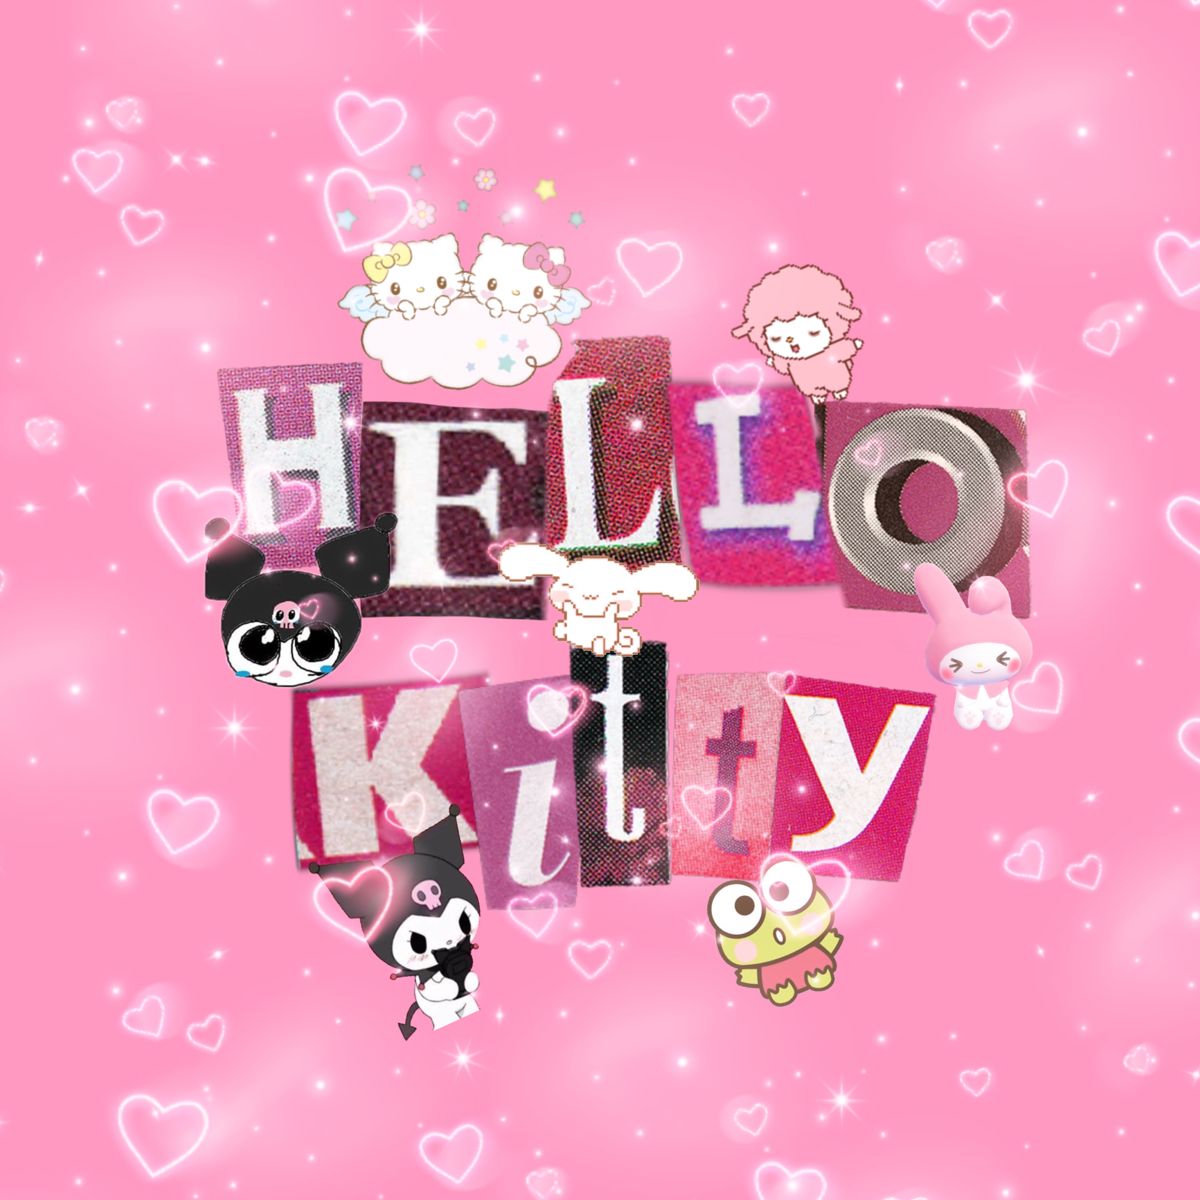 ﾟ✧*:・ﾟ✧. Hello kitty image, Hello kitty wallpaper, Kitty wallpaper